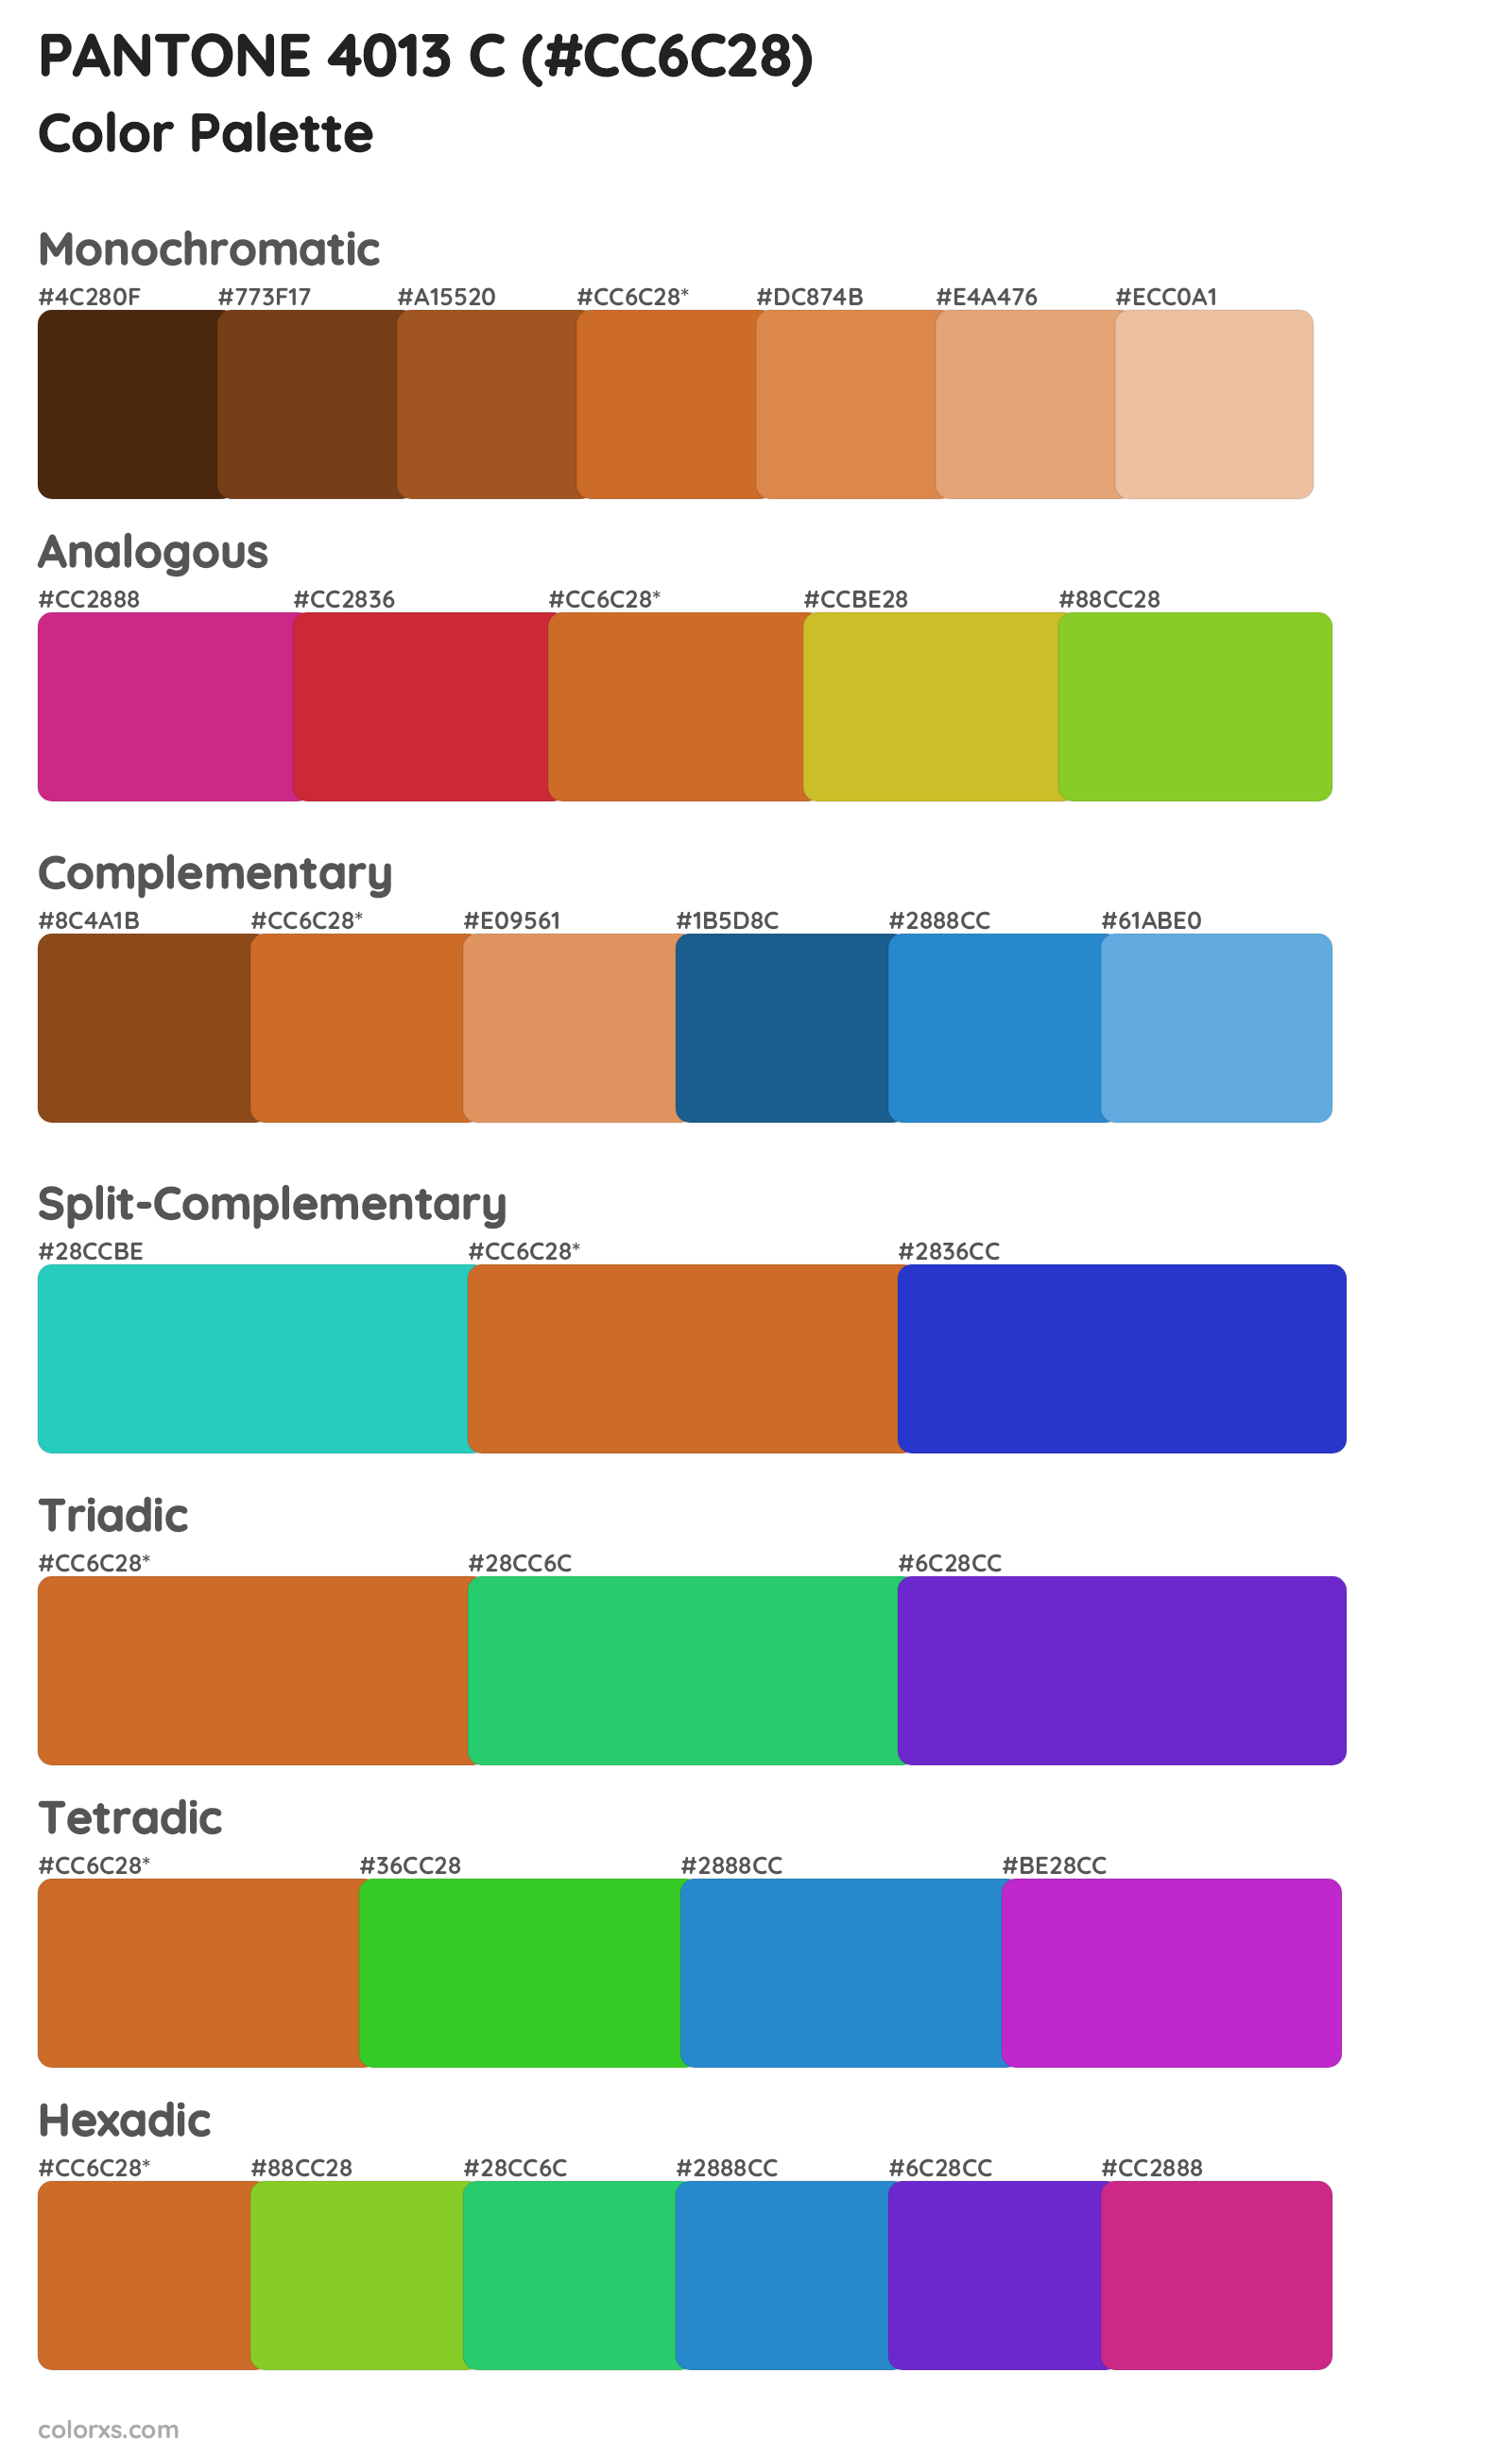 PANTONE 4013 C Color Scheme Palettes